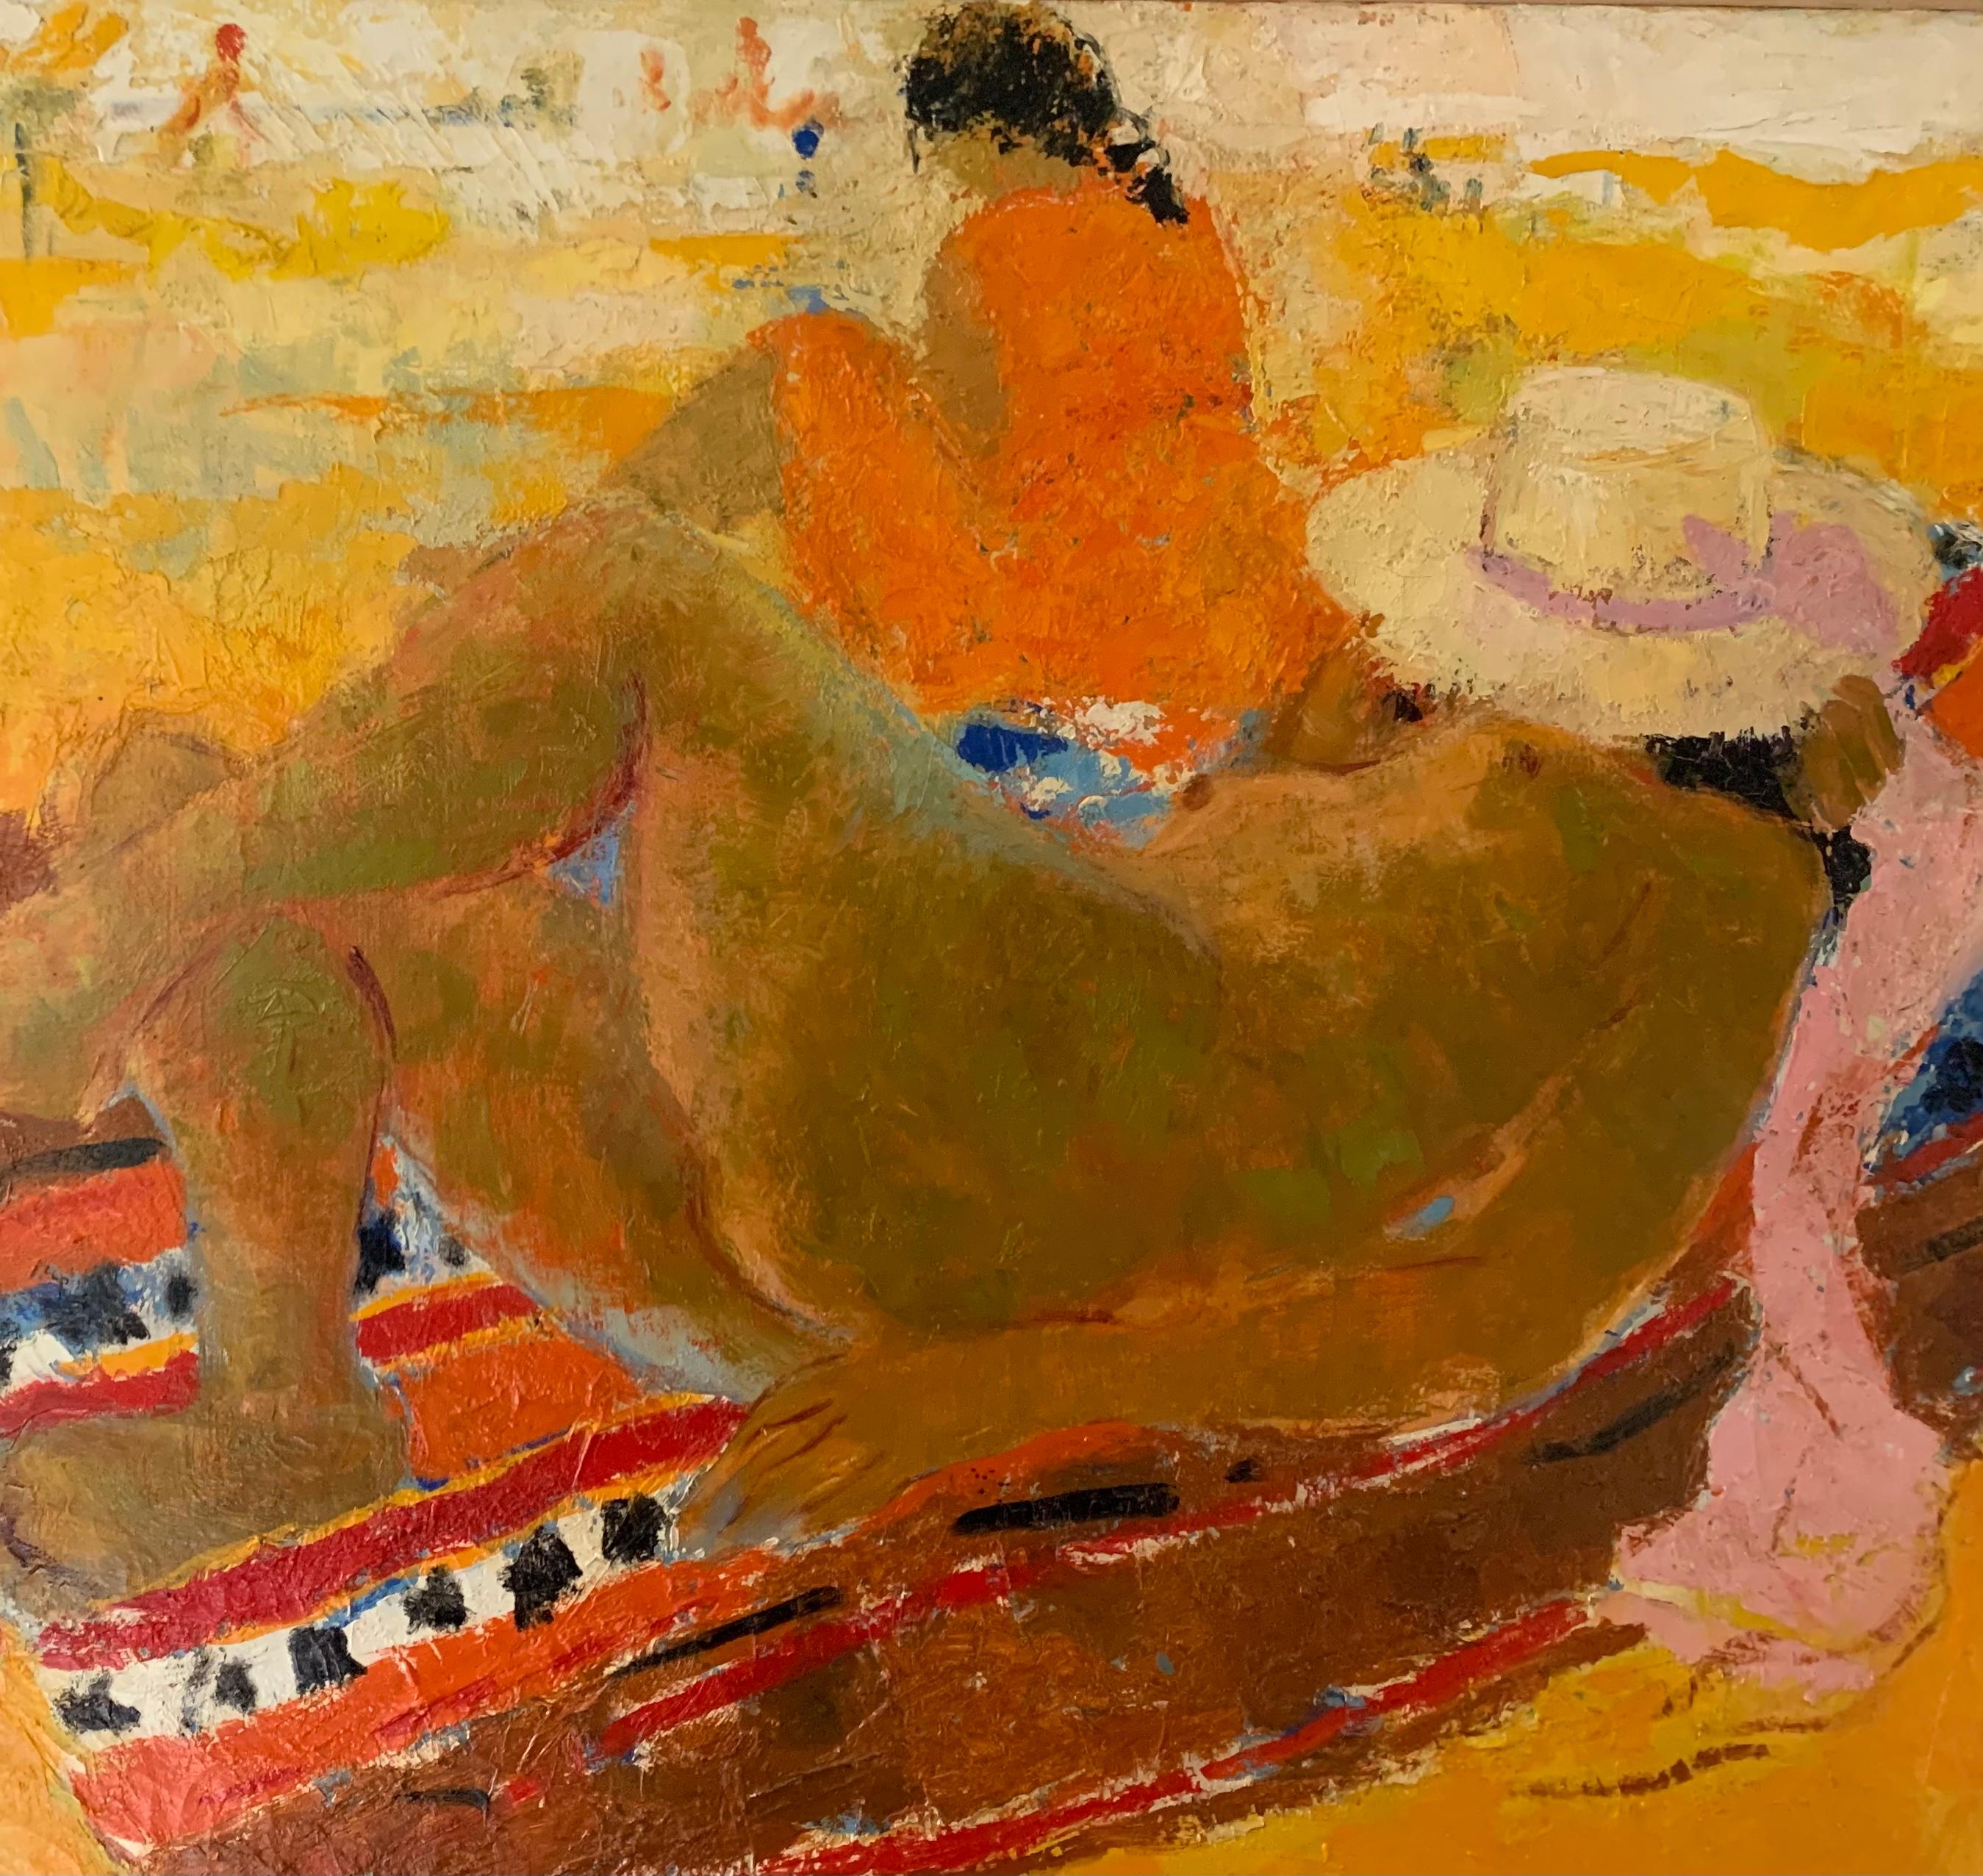 Scène de plage impressionniste française, par Bernard Taurelle (1931 - 2007)      )

Huile sur toile
Signé
28 x 36 pouces
Total 37 x 44 pouces 

Dans cette scène de plage impressionniste de Bernard Taurelle, un couple est allongé sur des chaises de